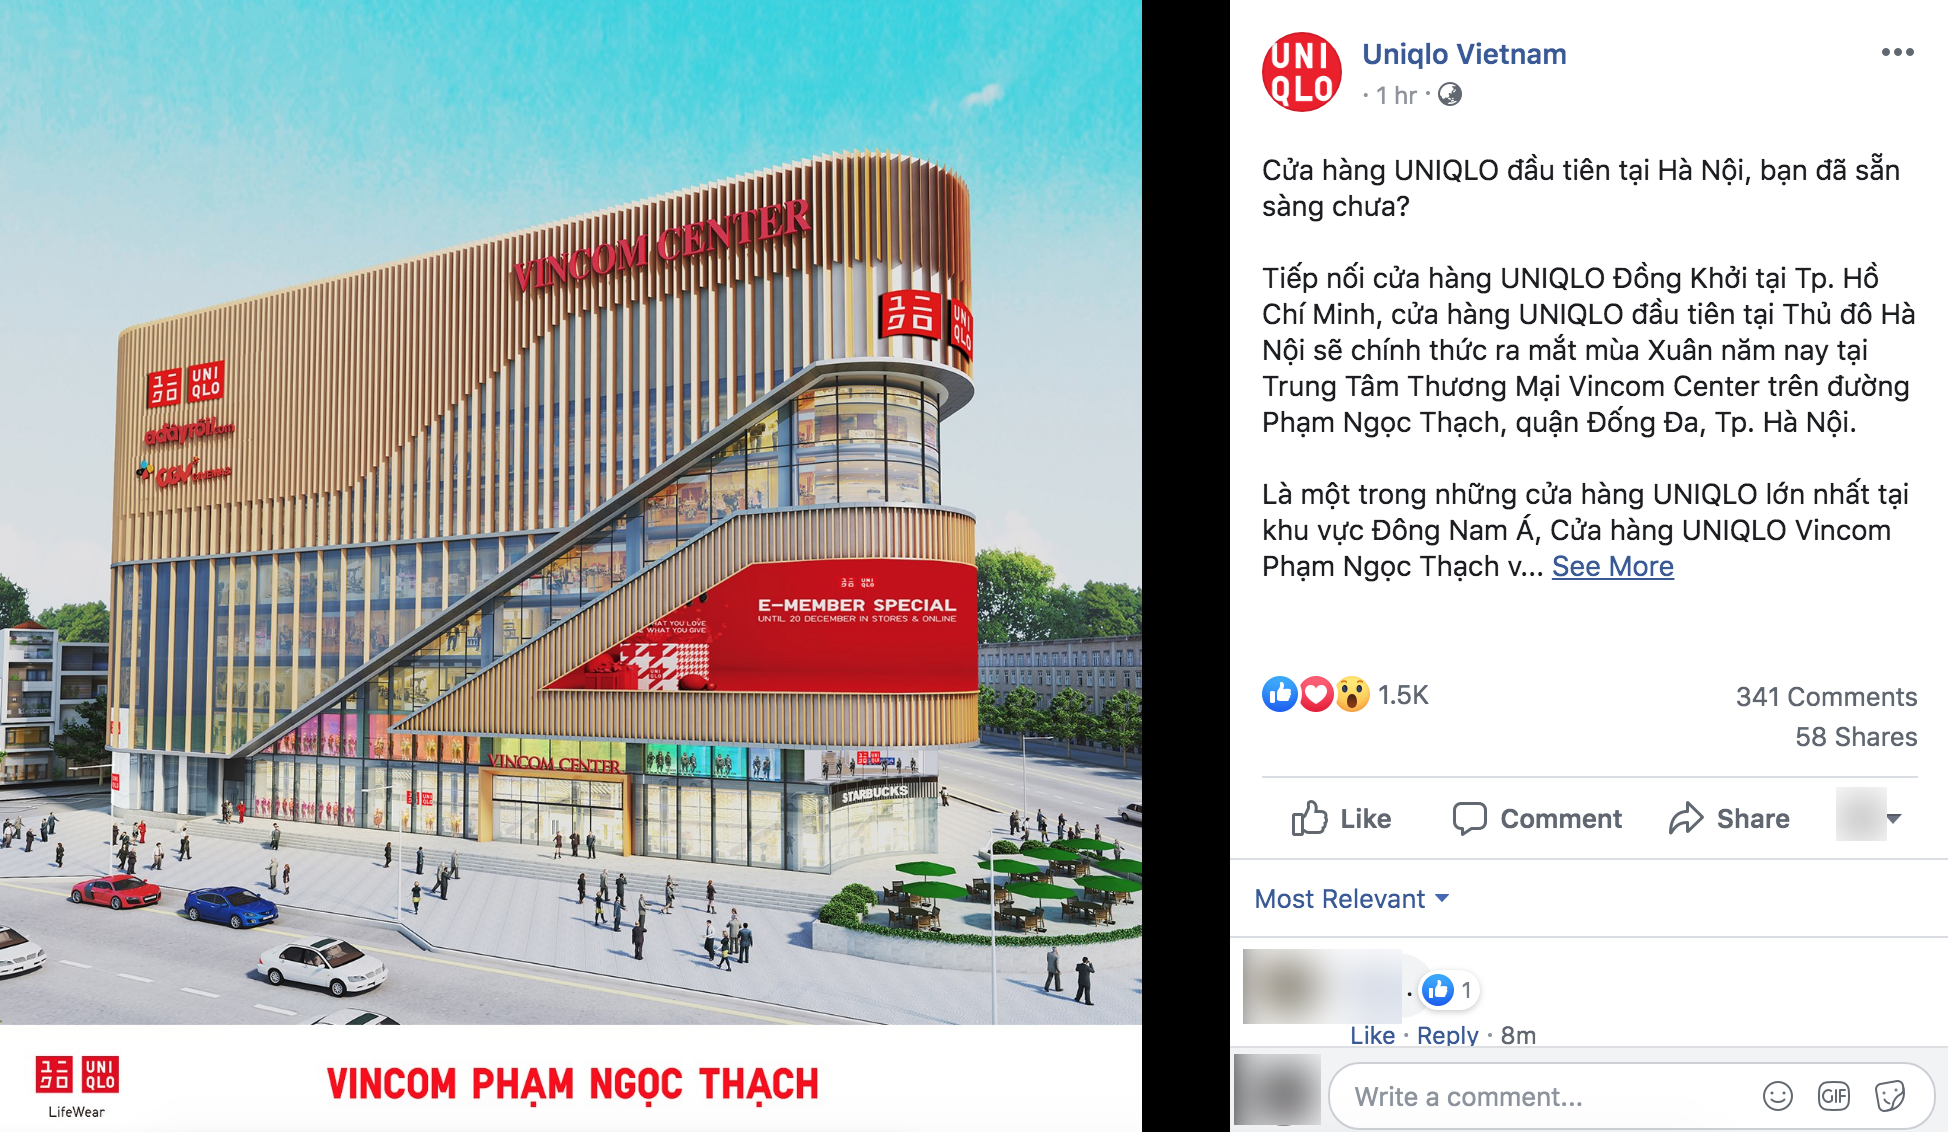 Chính thức: UNIQLO xác nhận sẽ mở store Hà Nội đầu tiên tại Vincom Center Phạm Ngọc Thạch - Ảnh 1.